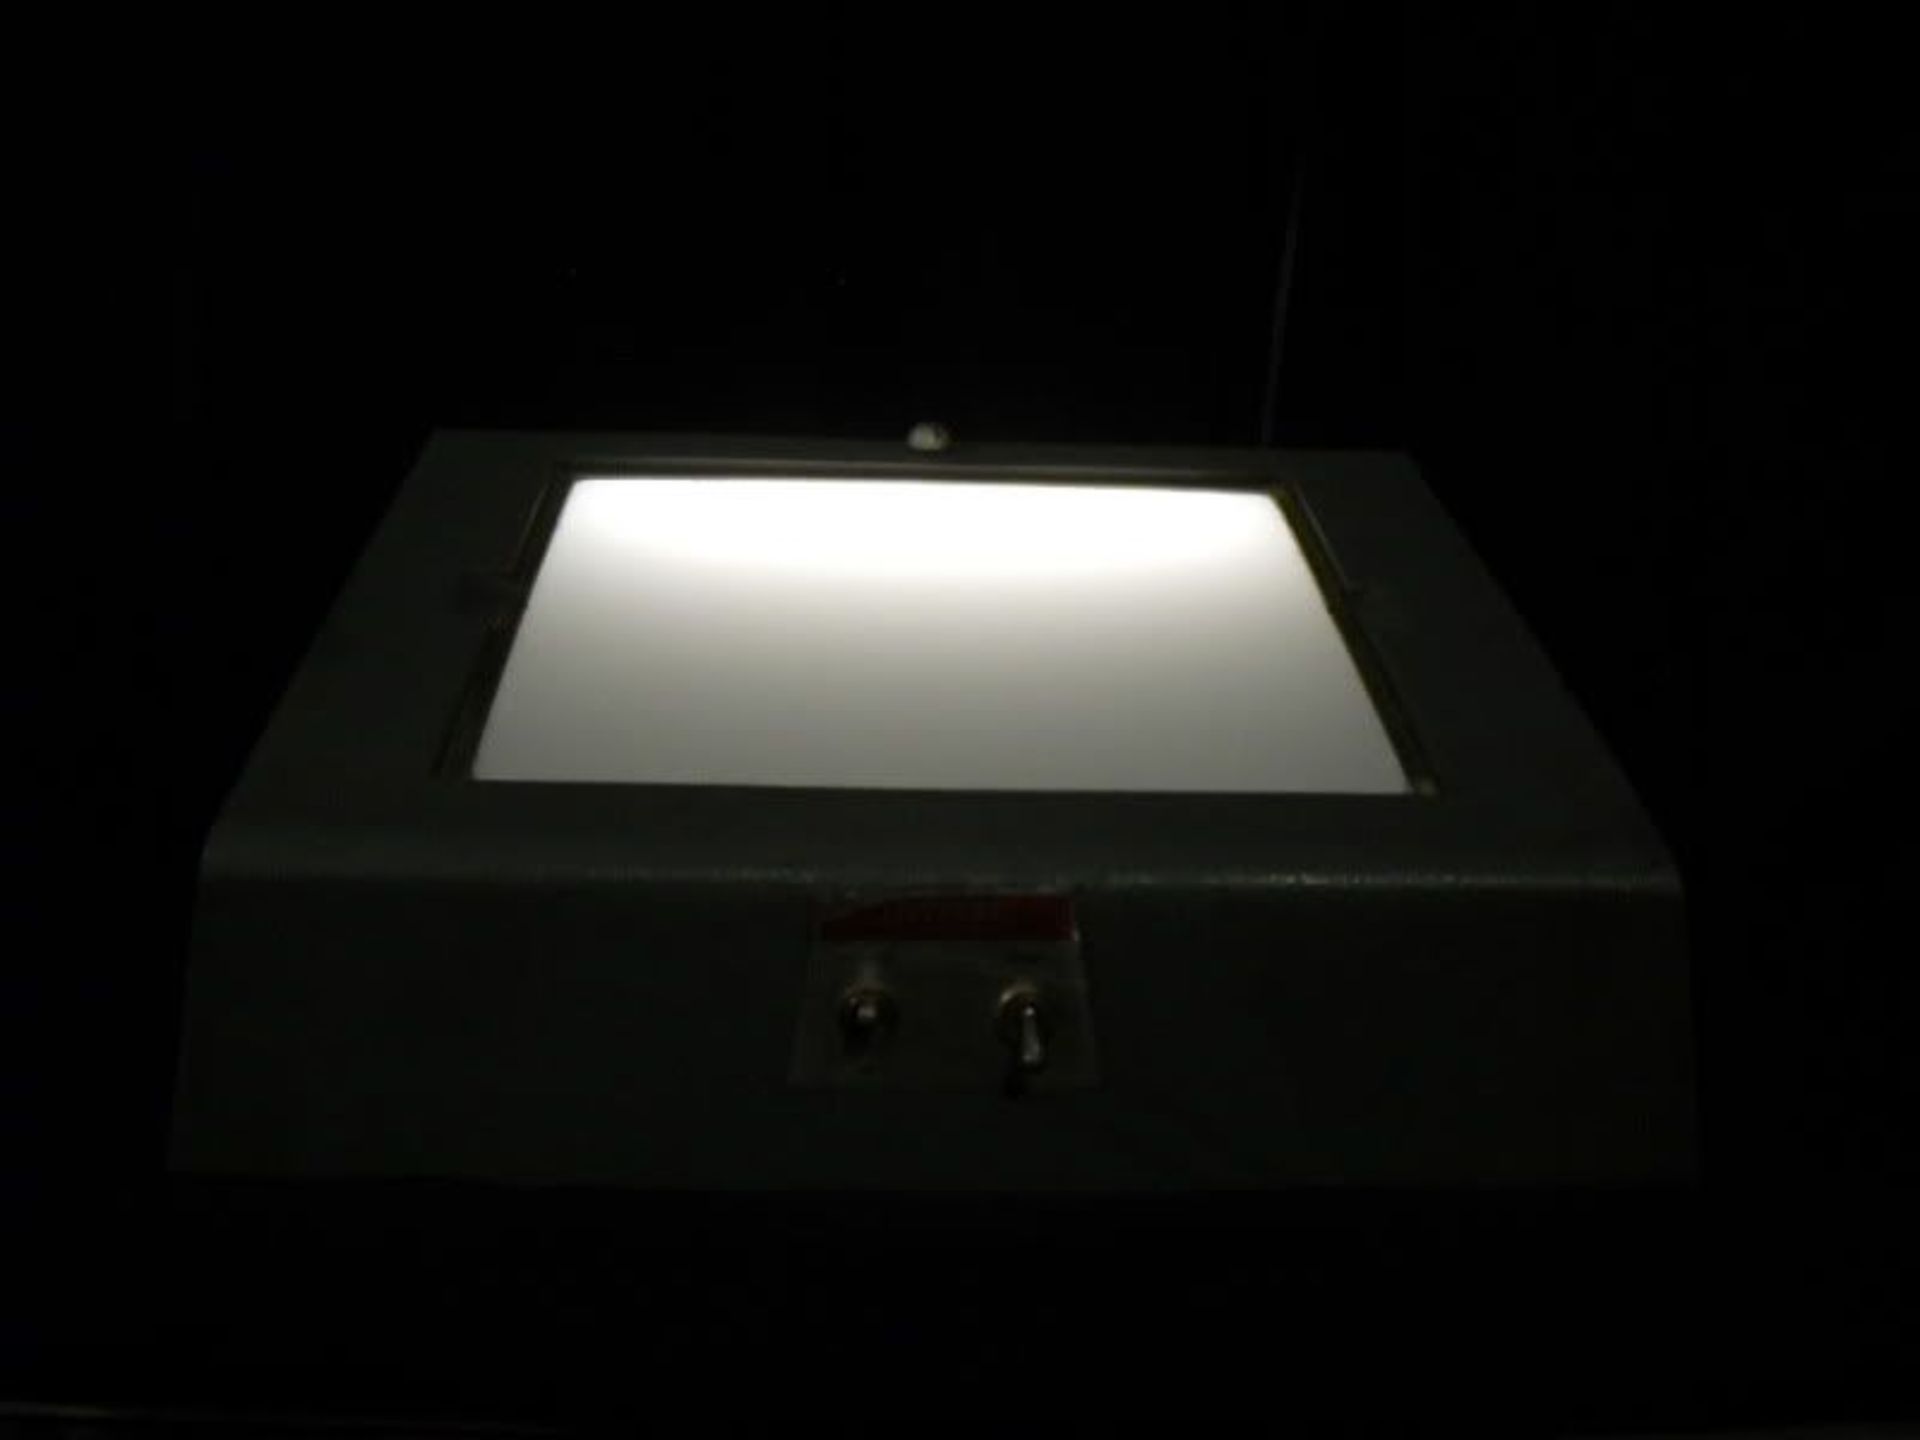 Shandon X-Ray Viewing Xray Viewer Light Box Illuminator Cat # 2858, Qty 1, 330793578233